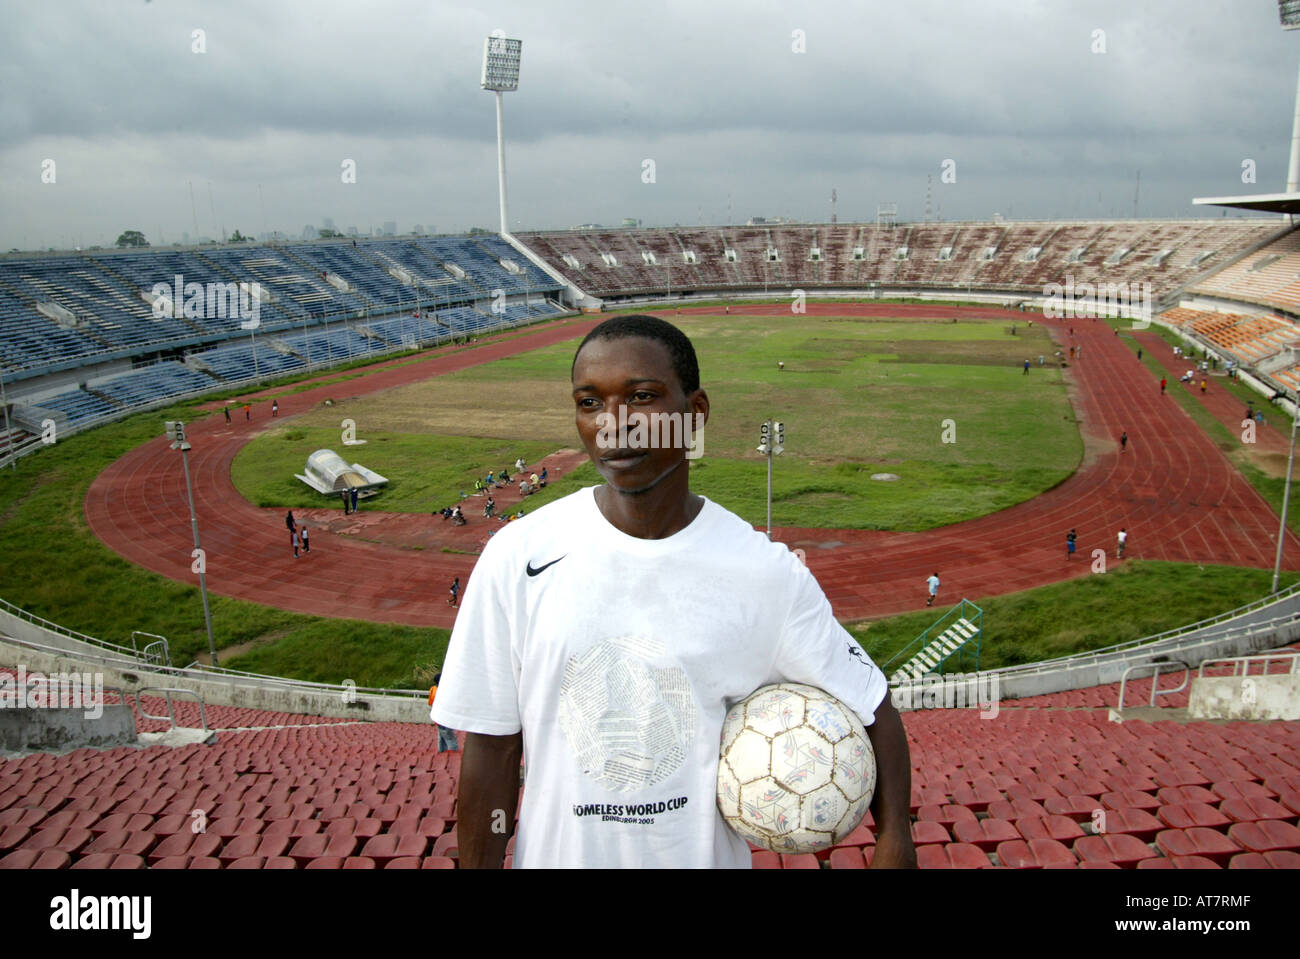 En Lagos, muchos jóvenes talentos del fútbol quiere unirse a la organización de los gatos. Su objetivo es llegar a la selección nacional de fútbol Foto de stock